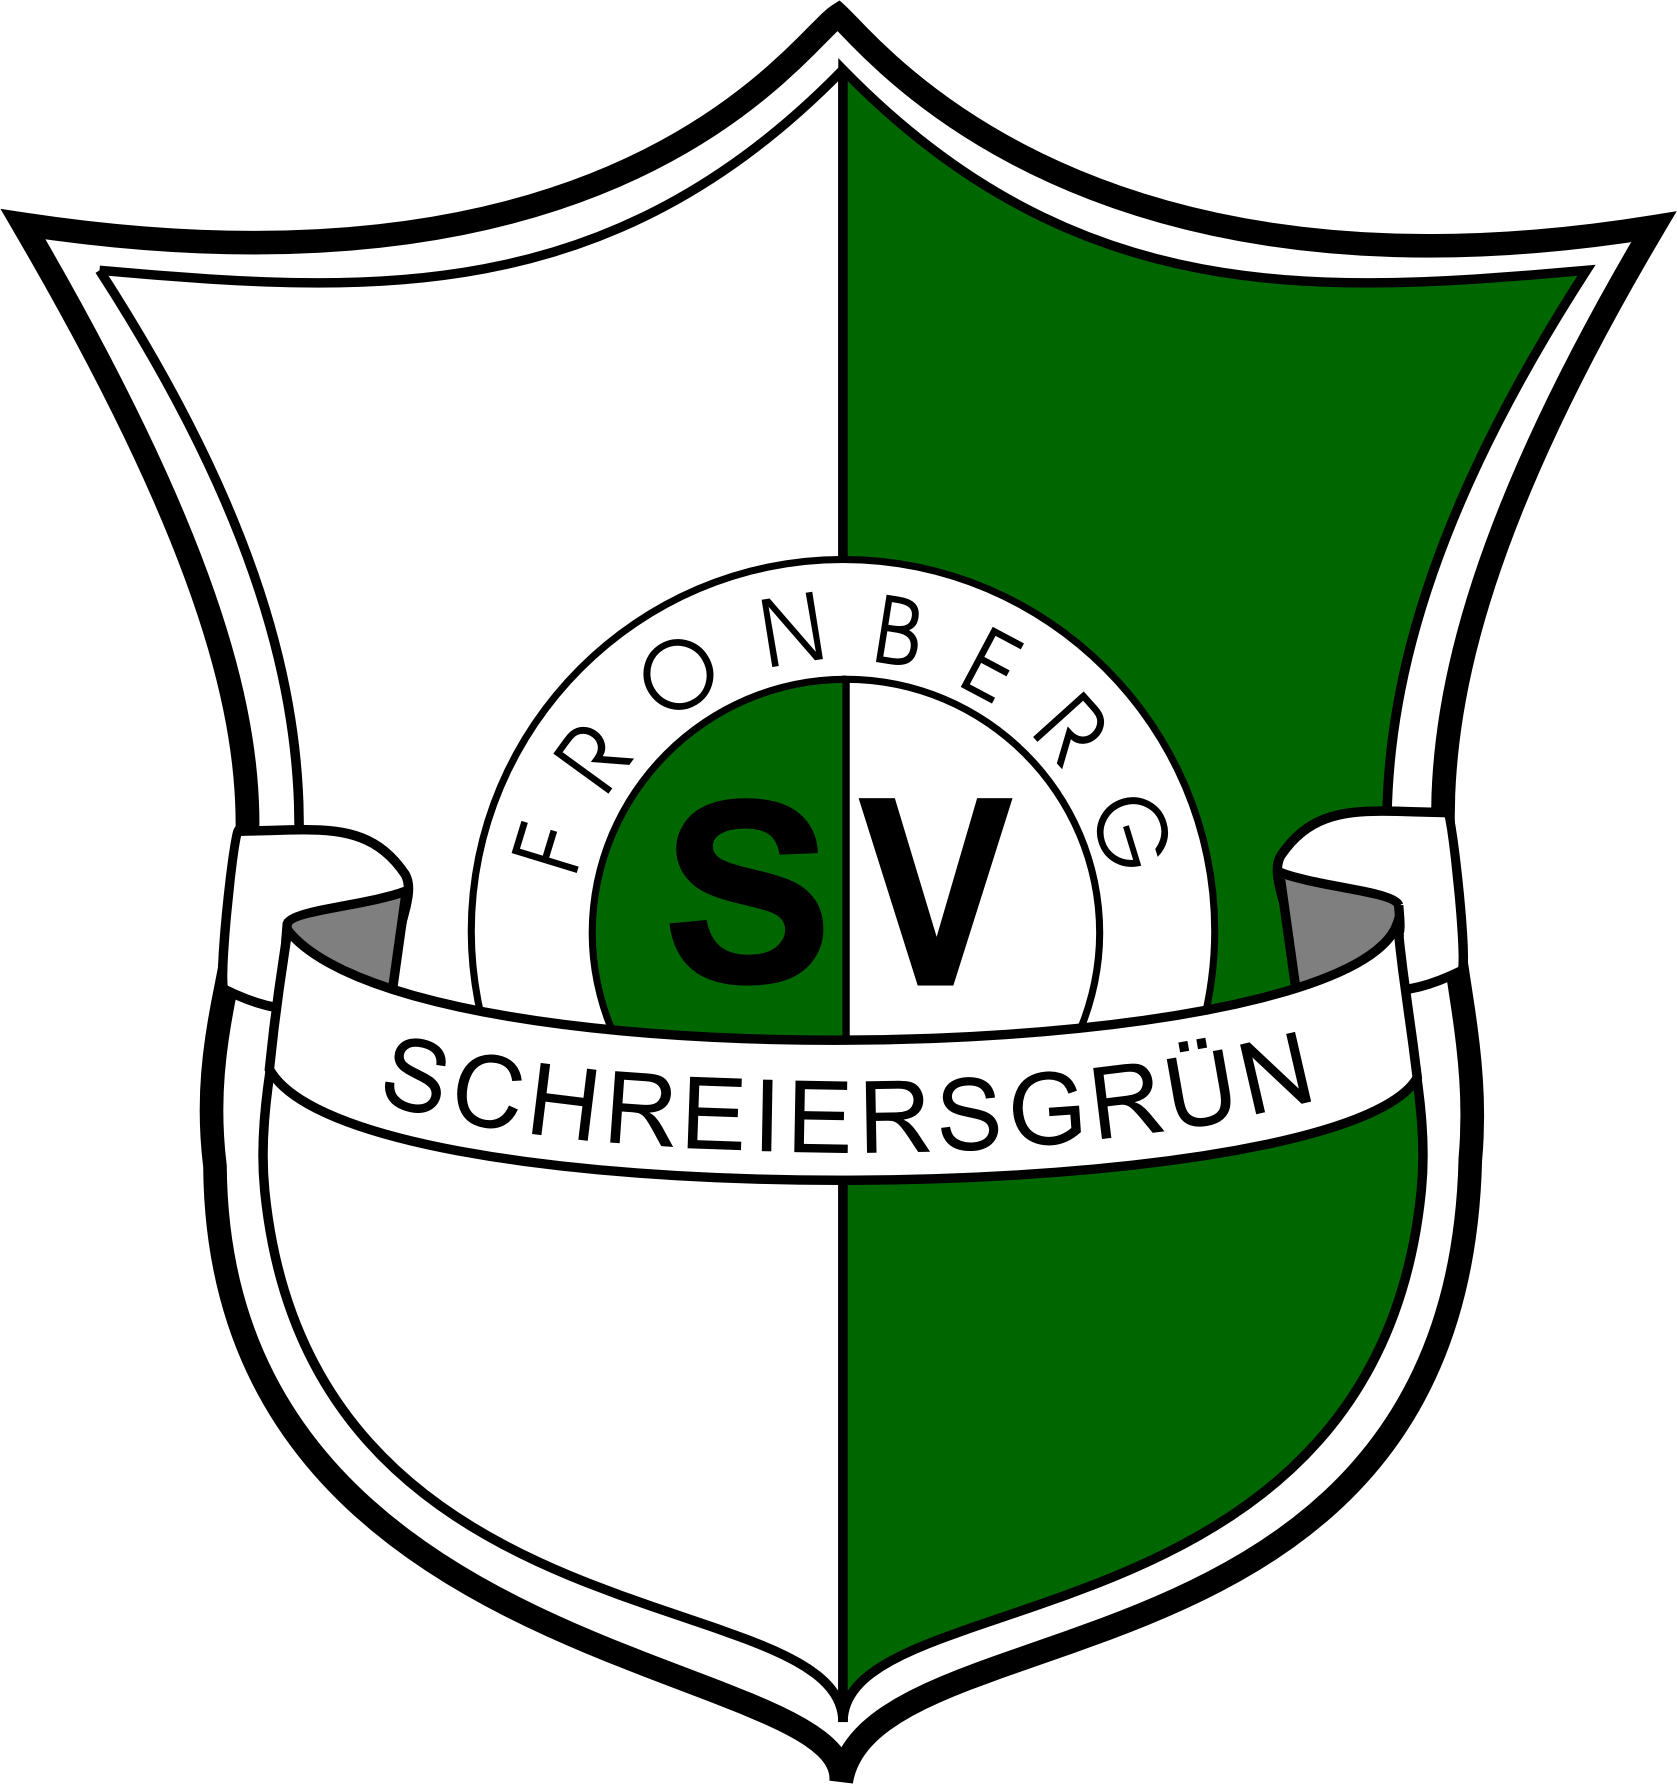 Wappen / Logo des Teams SpG Schreiersgrn / Treuen / Reumtengrn